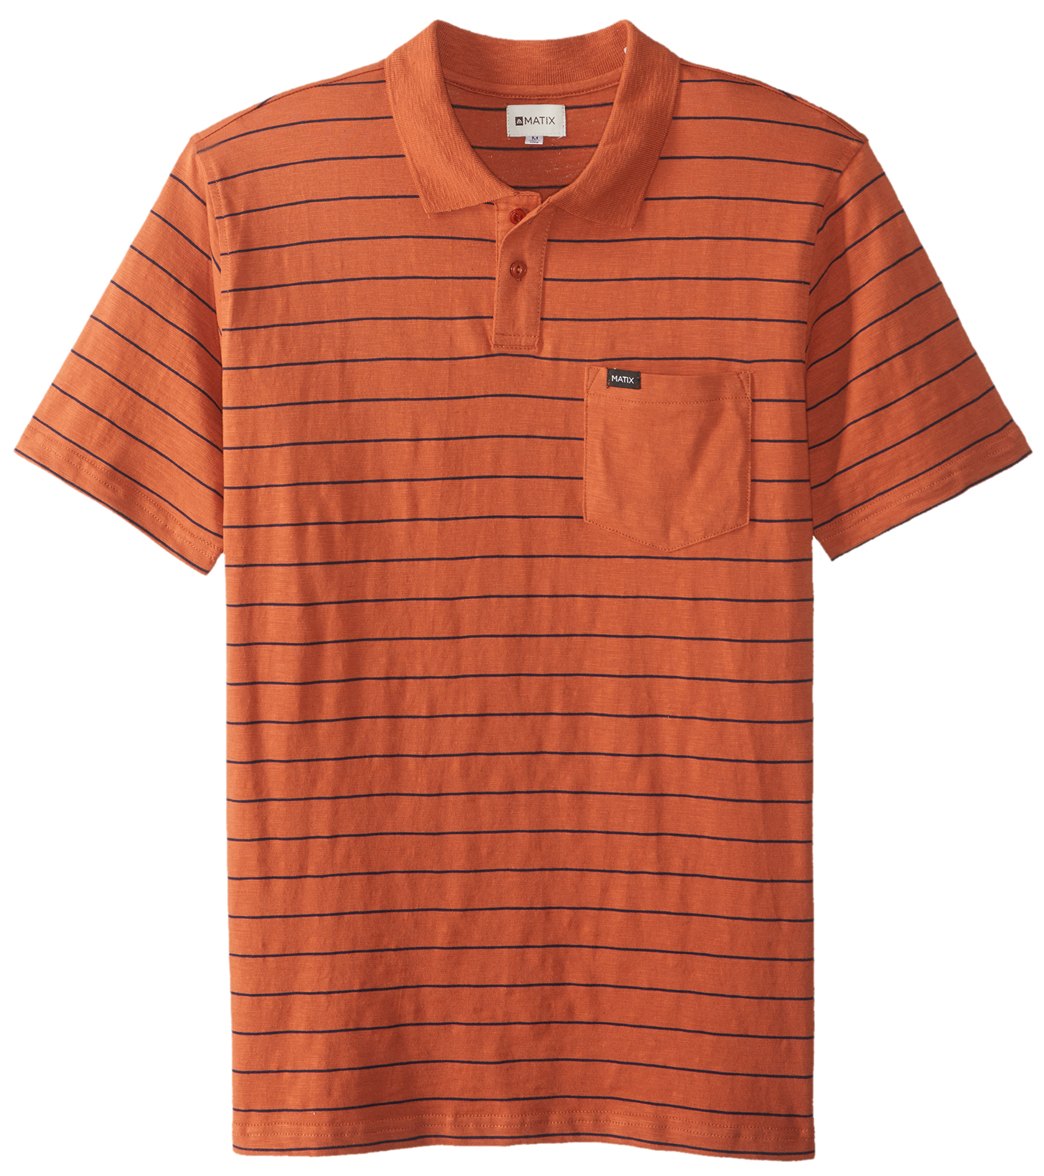 Matix Men's Easton Stripe Polo Shirt - Rust Large Cotton - Swimoutlet.com